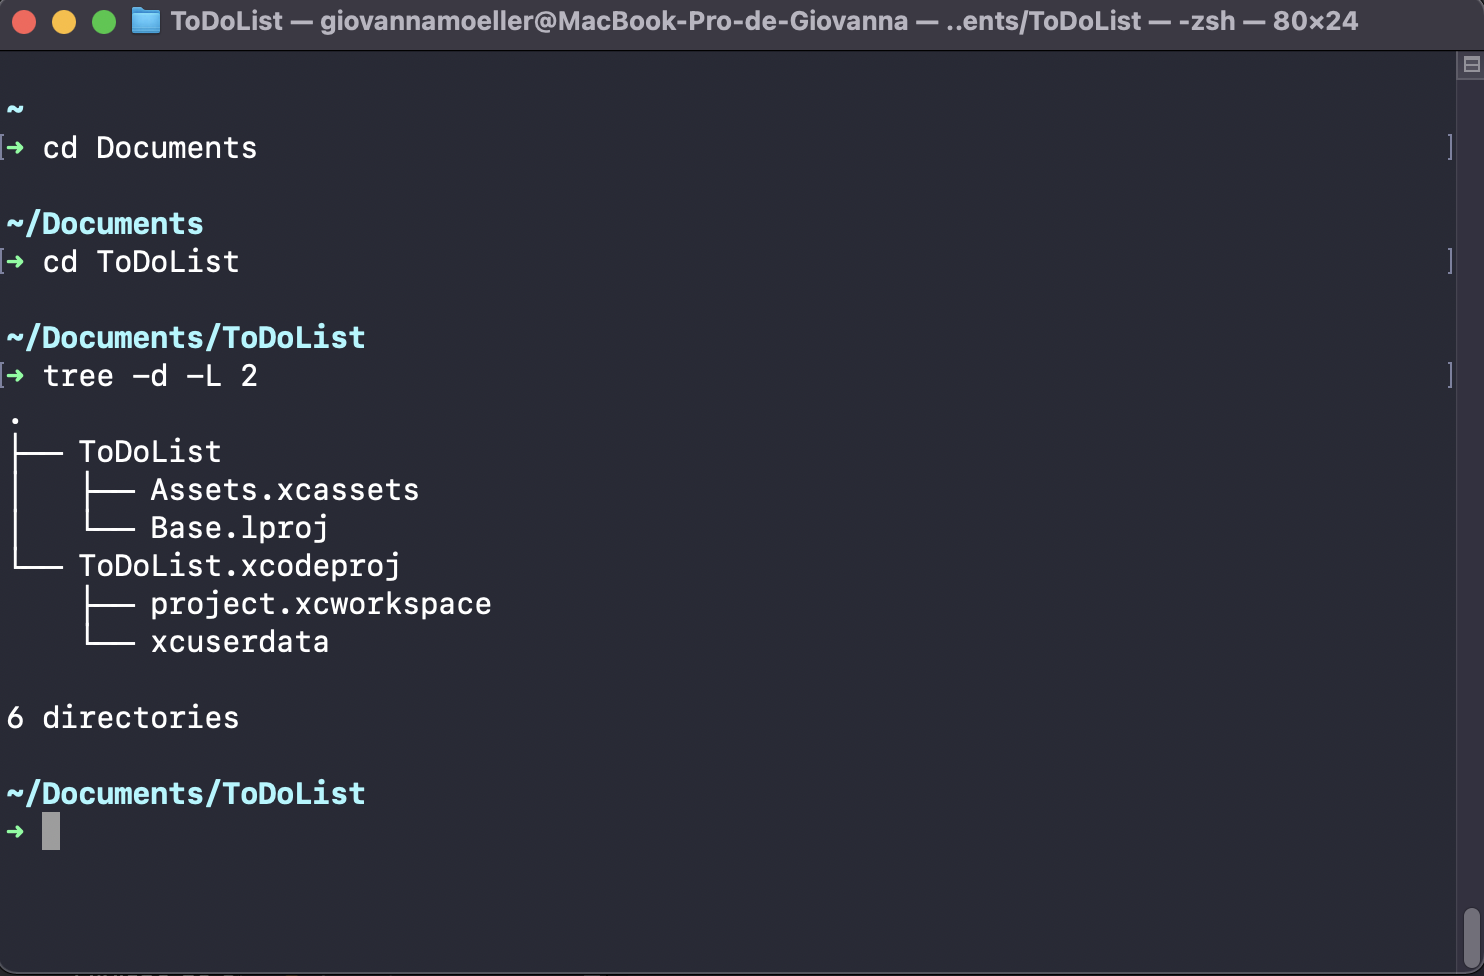 Imagem mostrando o terminal do XCode com os comandos `cd`, para percorrer todo o caminho necessário até chegar ao diretório raíz do projeto: cd Documents, cd ToDoList.